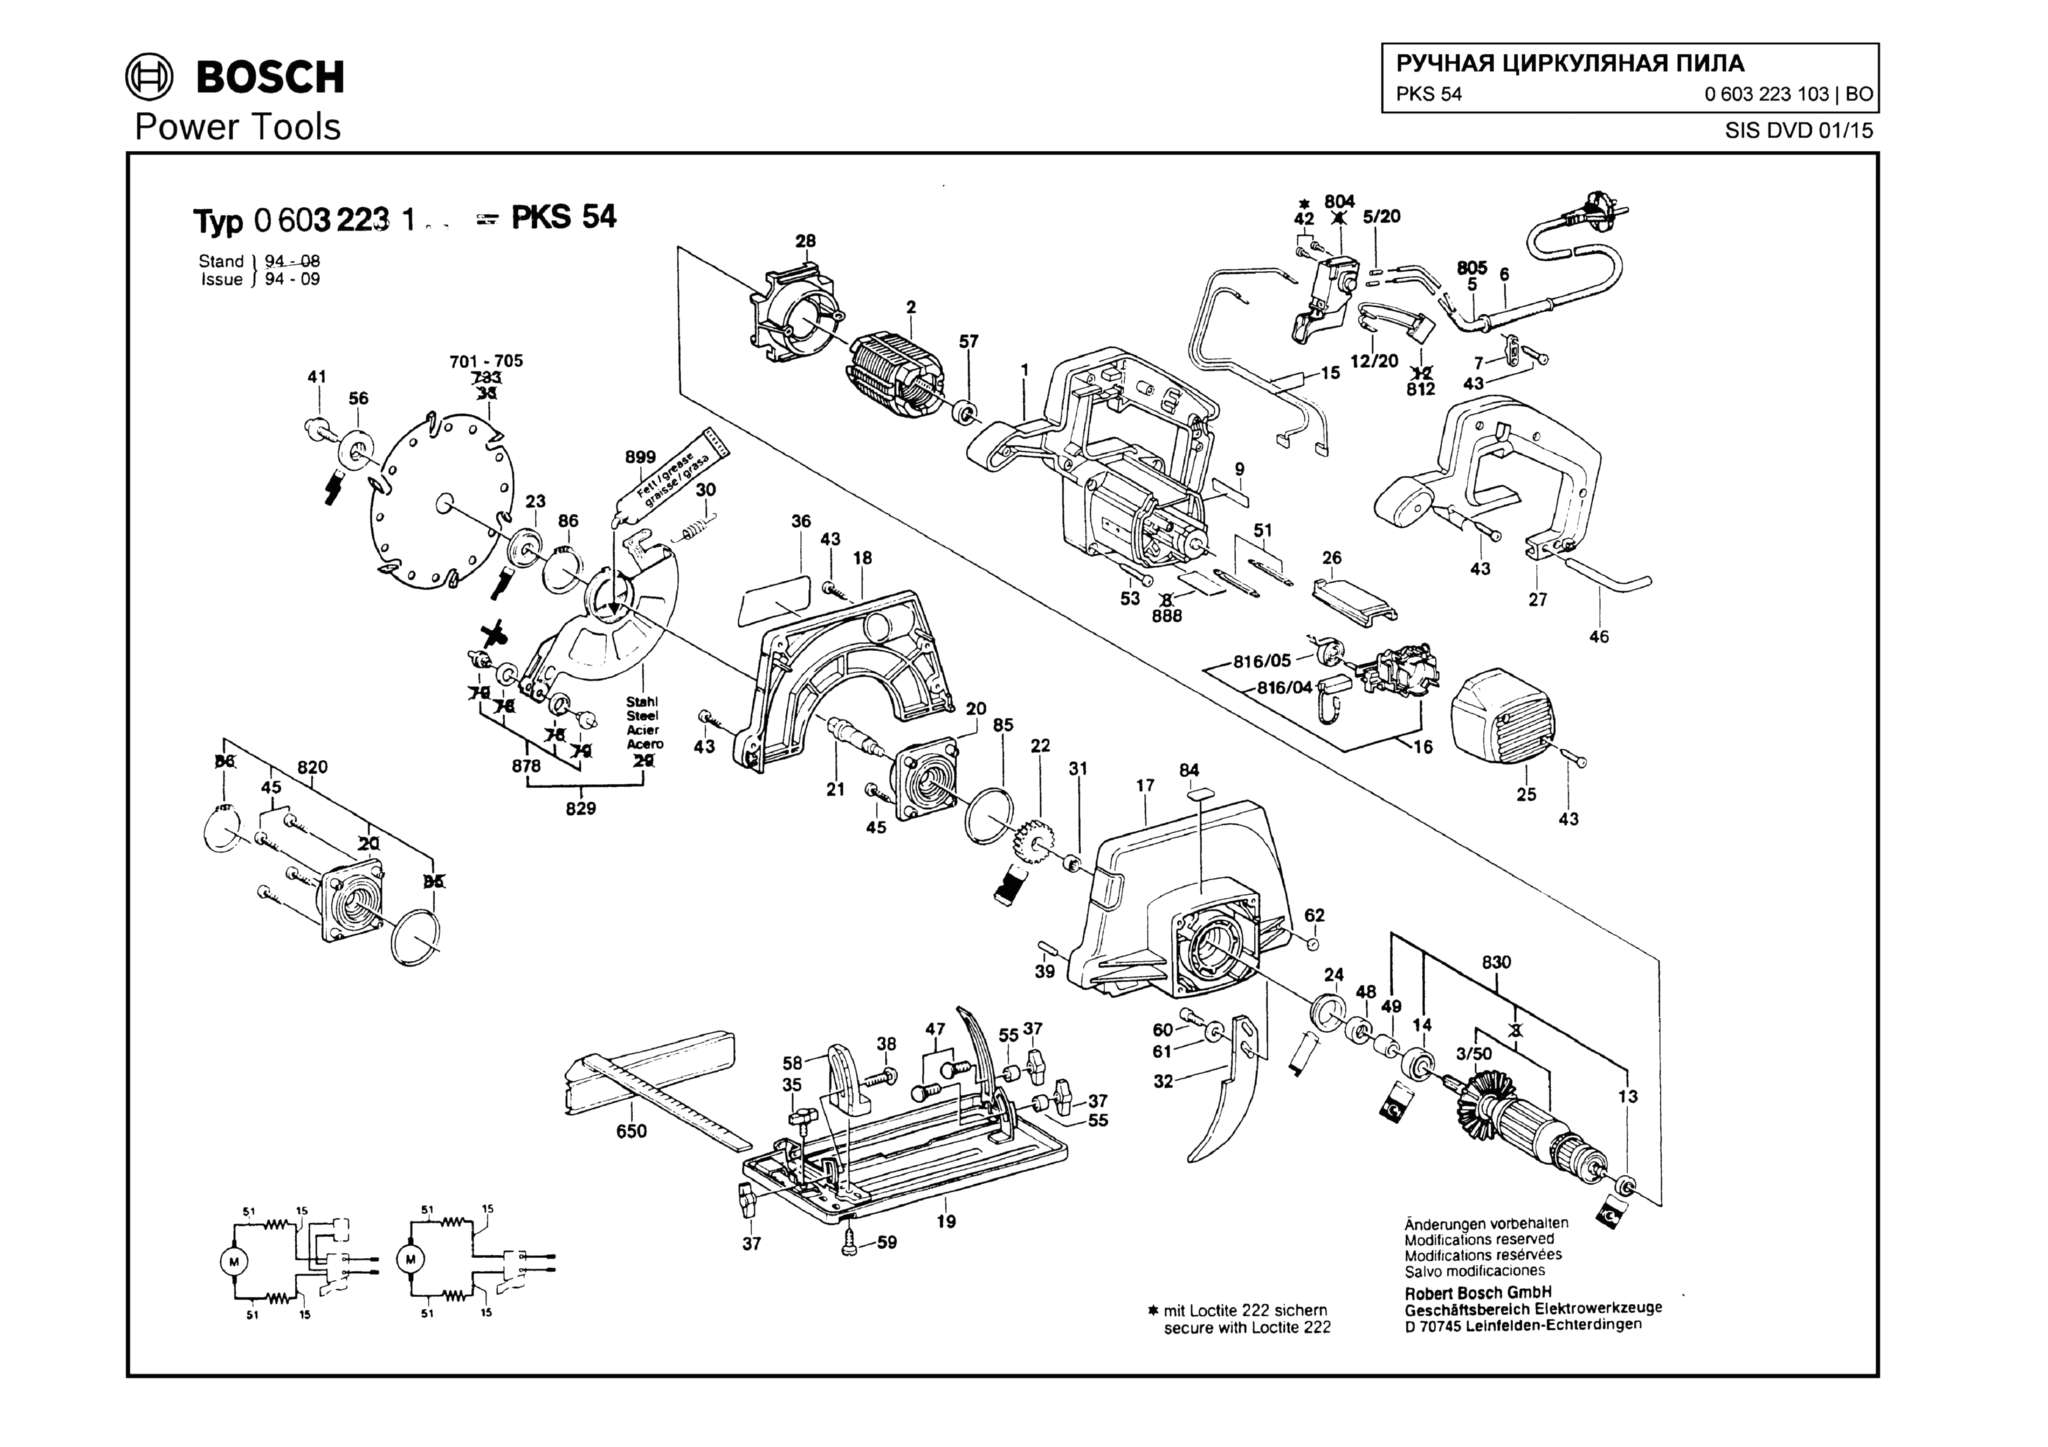 Запчасти, схема и деталировка Bosch PKS 54 (ТИП 0603223103)